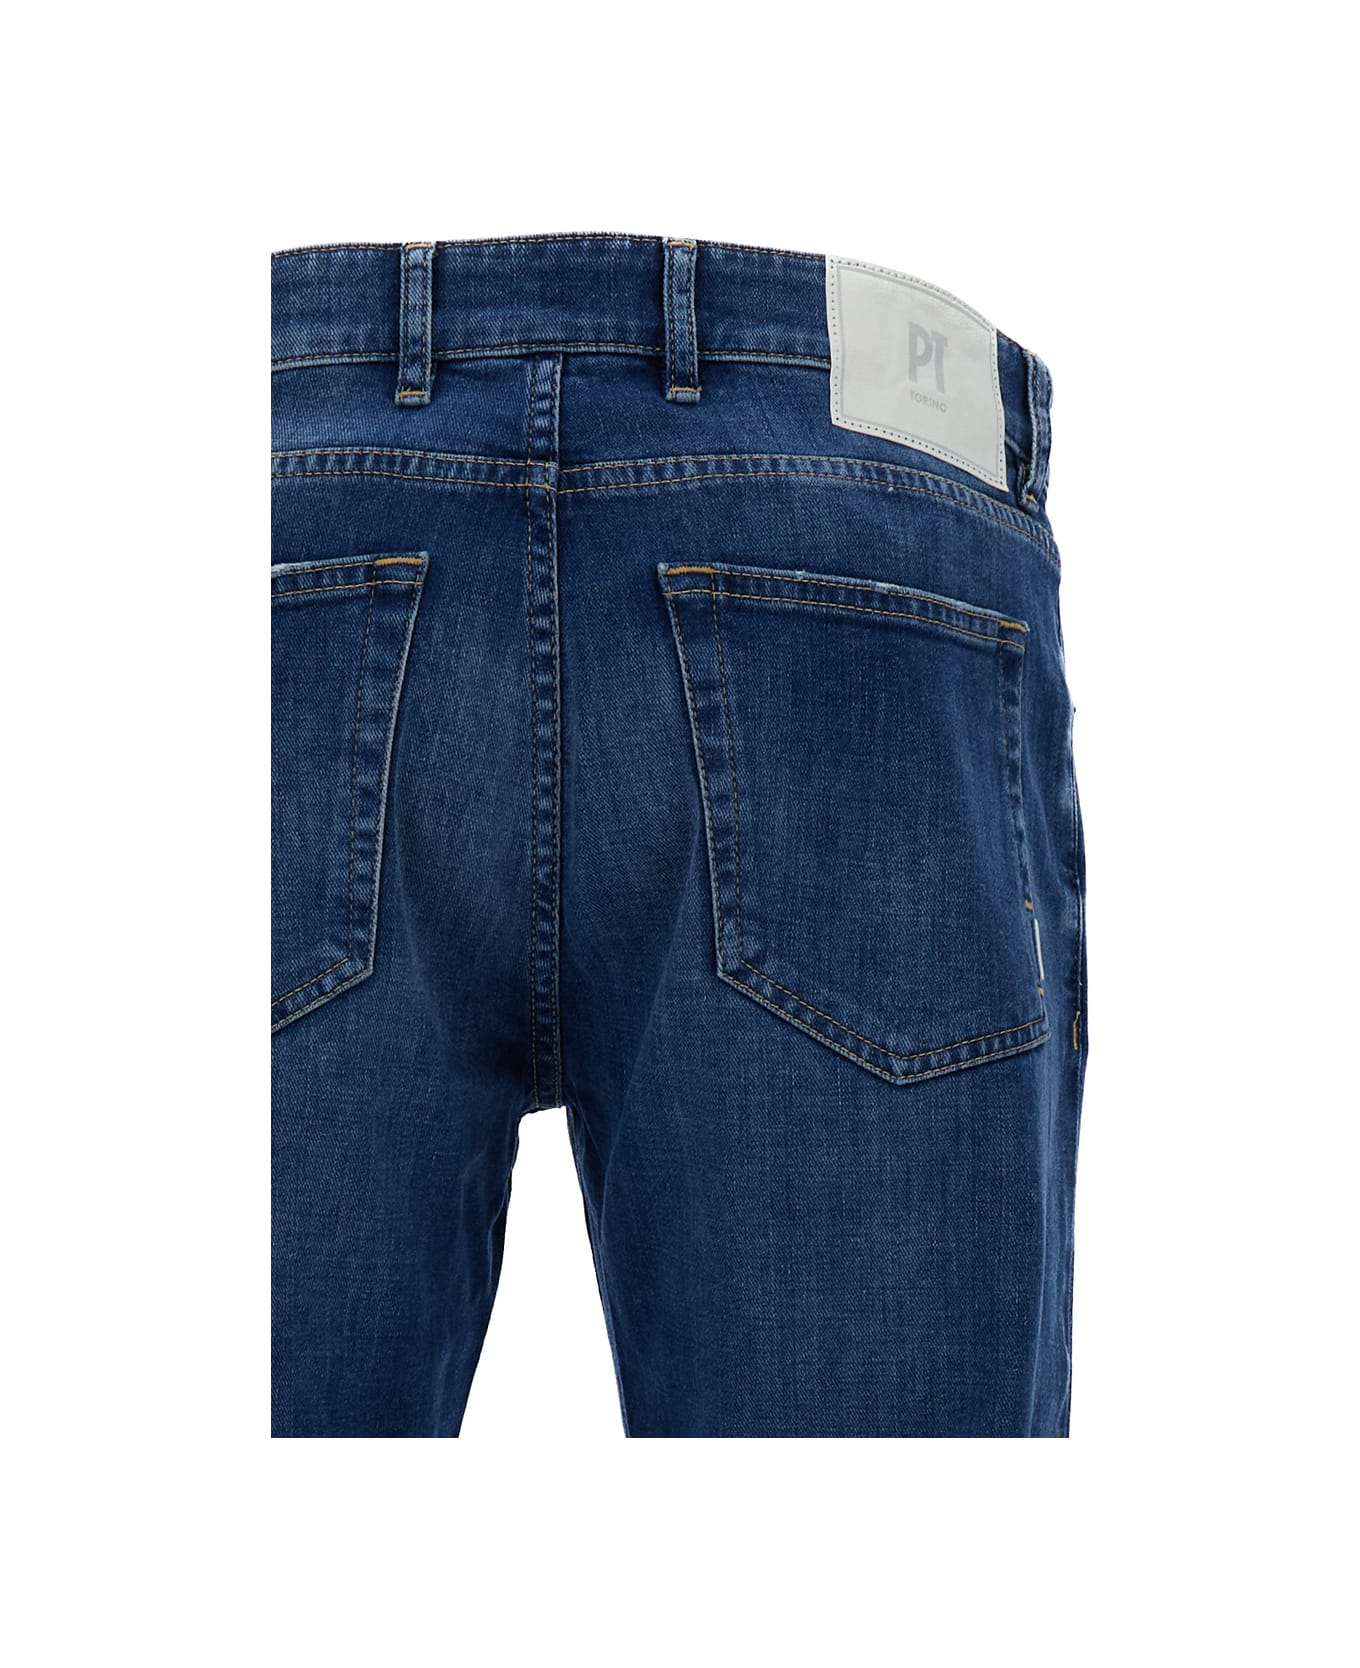 PT01 Dark Blue Medium Waist 'swing' Jeans In Cotton Blend Man - Blu デニム